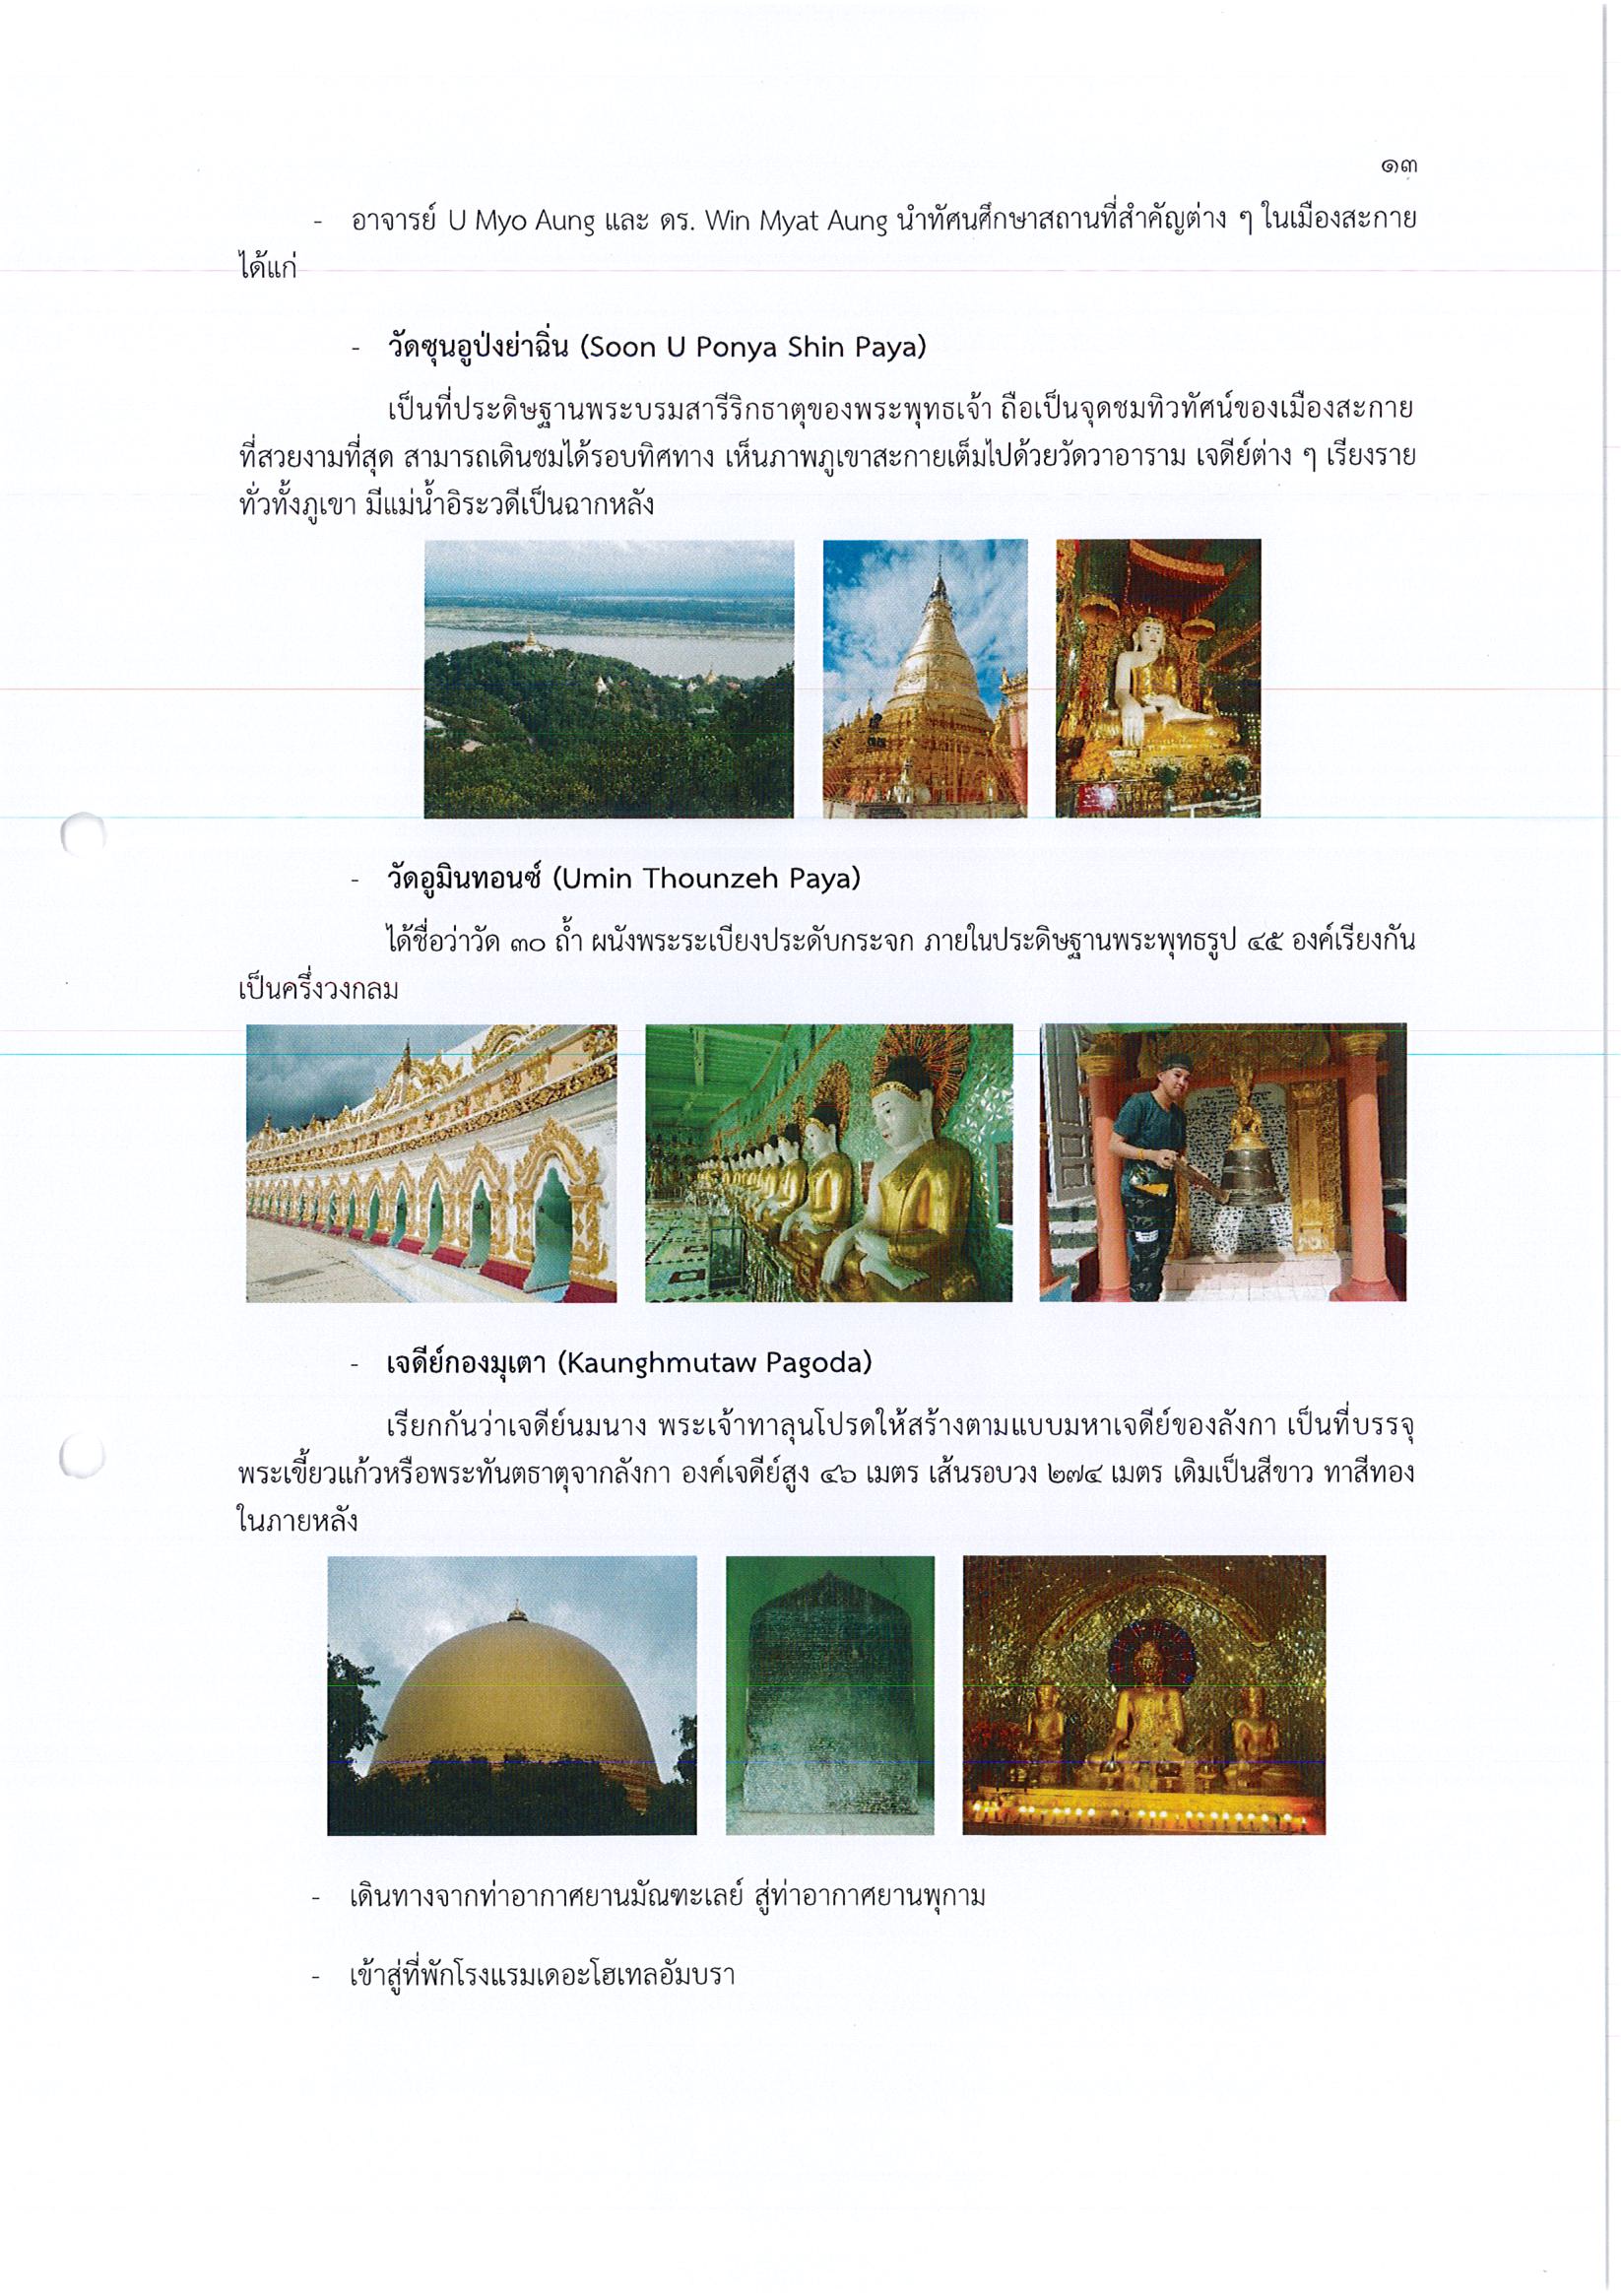 รายงานการเดินทางไปราชการ ณ สาธารณรัฐแห่งสหภาพเมียนมาร์ ระหว่างวันที่ 19 – 26 พฤศจิกายน 2560 โครงการสัมมนาในหัวข้อ Myanmar History from Myanmar Perspectives